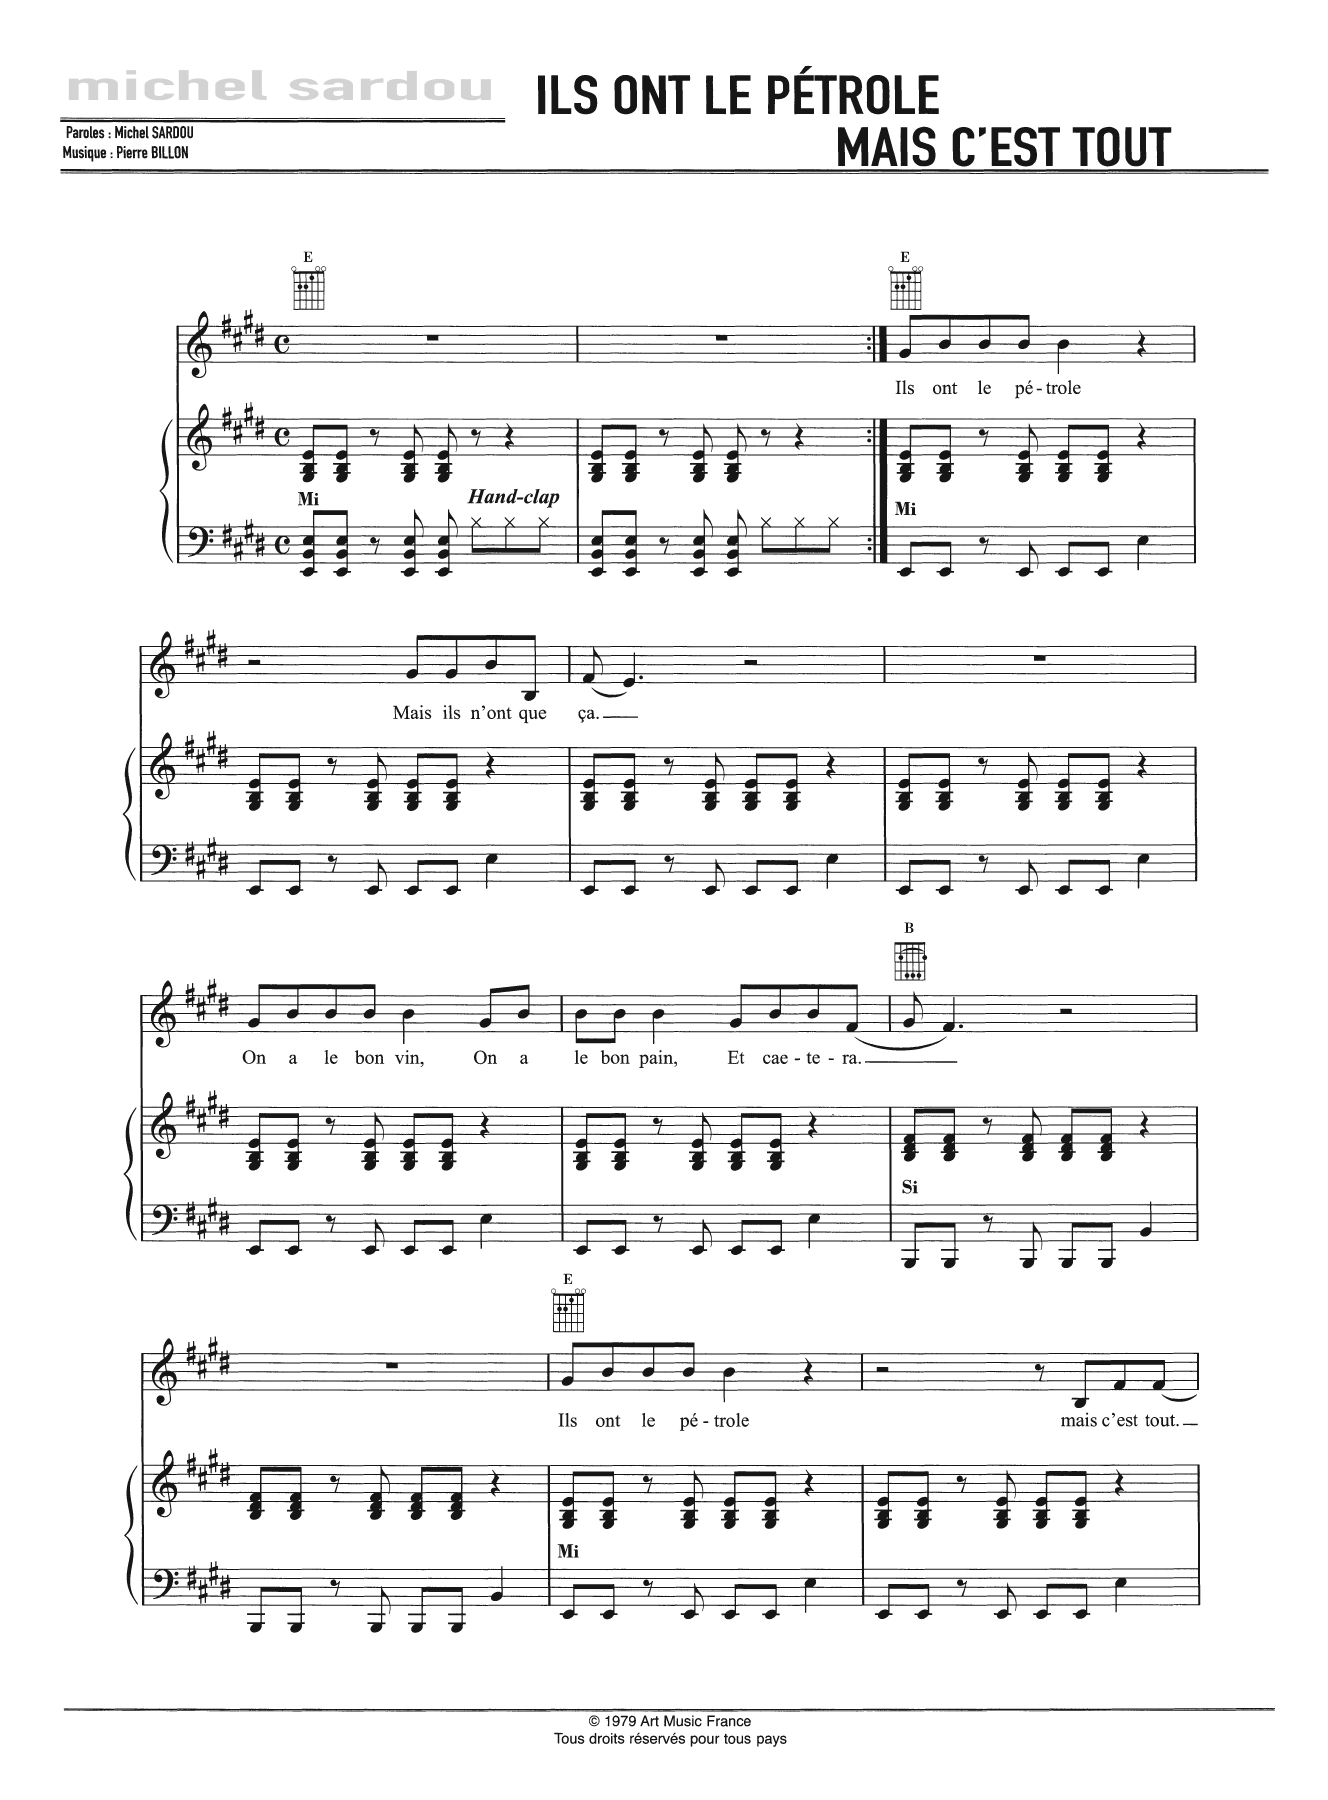 Michel Sardou Ils Ont Le Petrole Mais C'est Tout Sheet Music Notes & Chords for Piano, Vocal & Guitar - Download or Print PDF